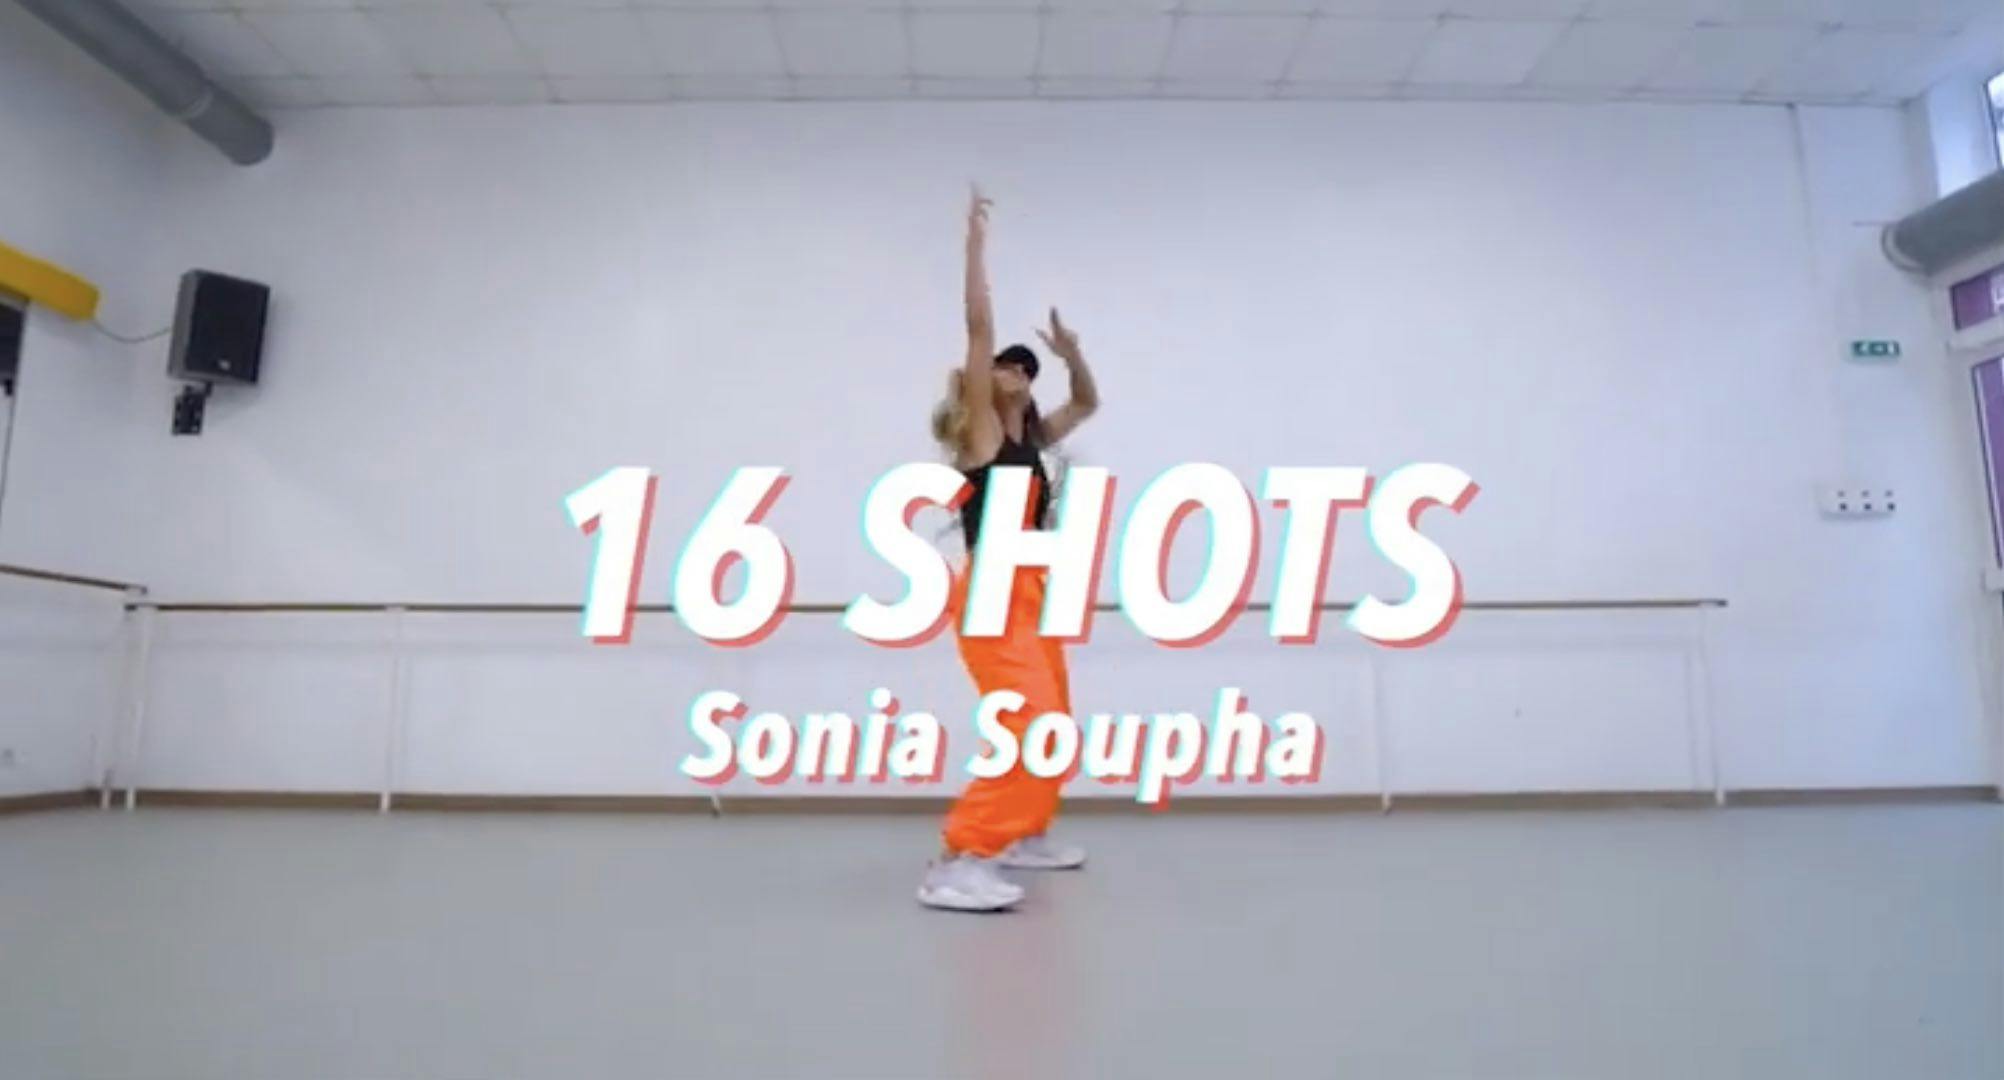 Cours de danse 16shots - Stefflon Don de Sonia Soupha